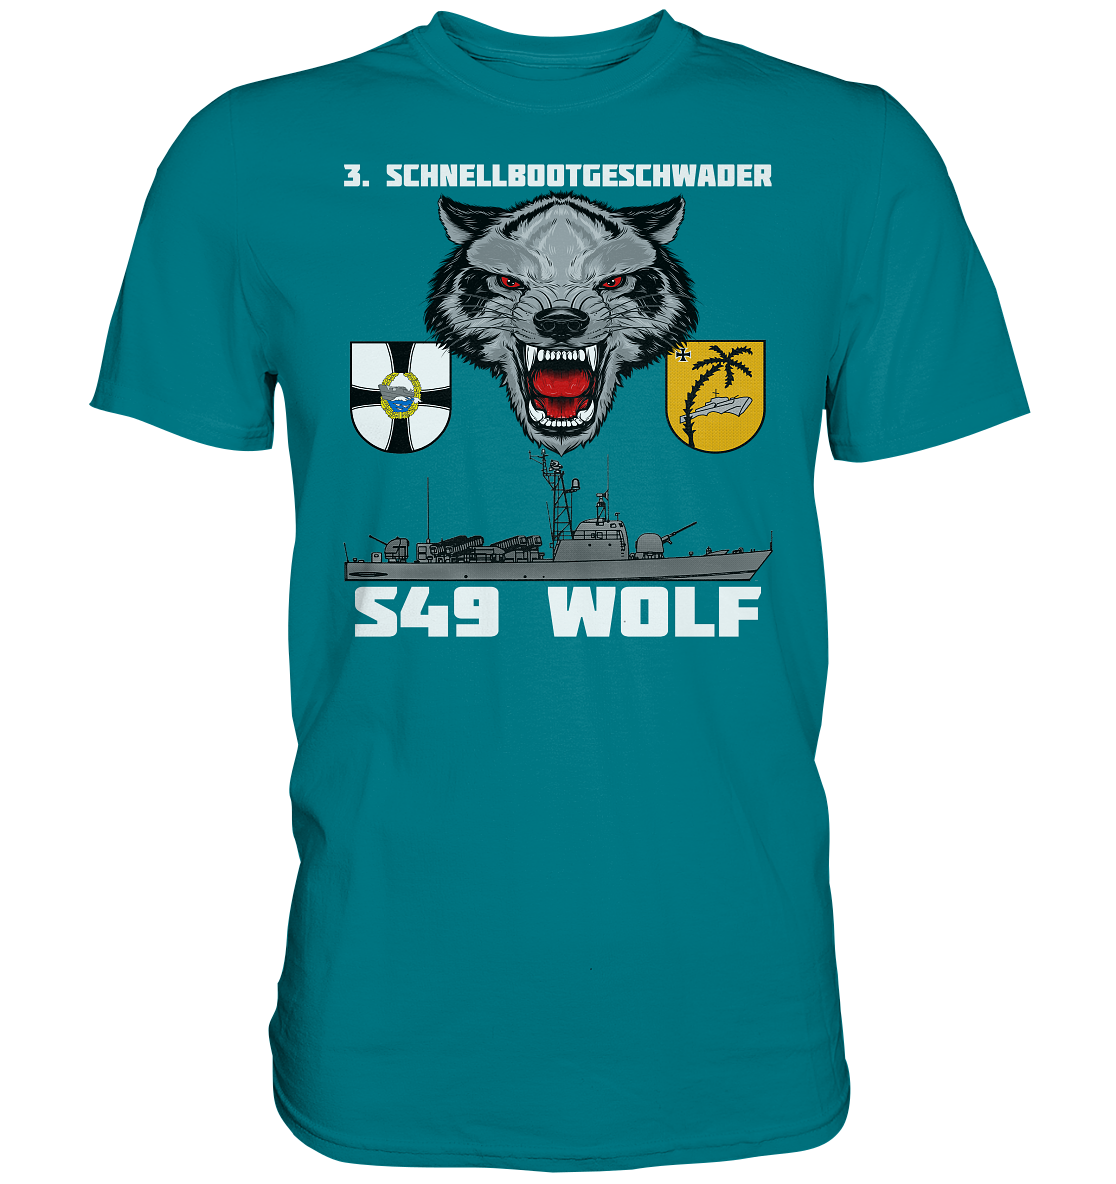 S49 WOLF - Premium Shirt